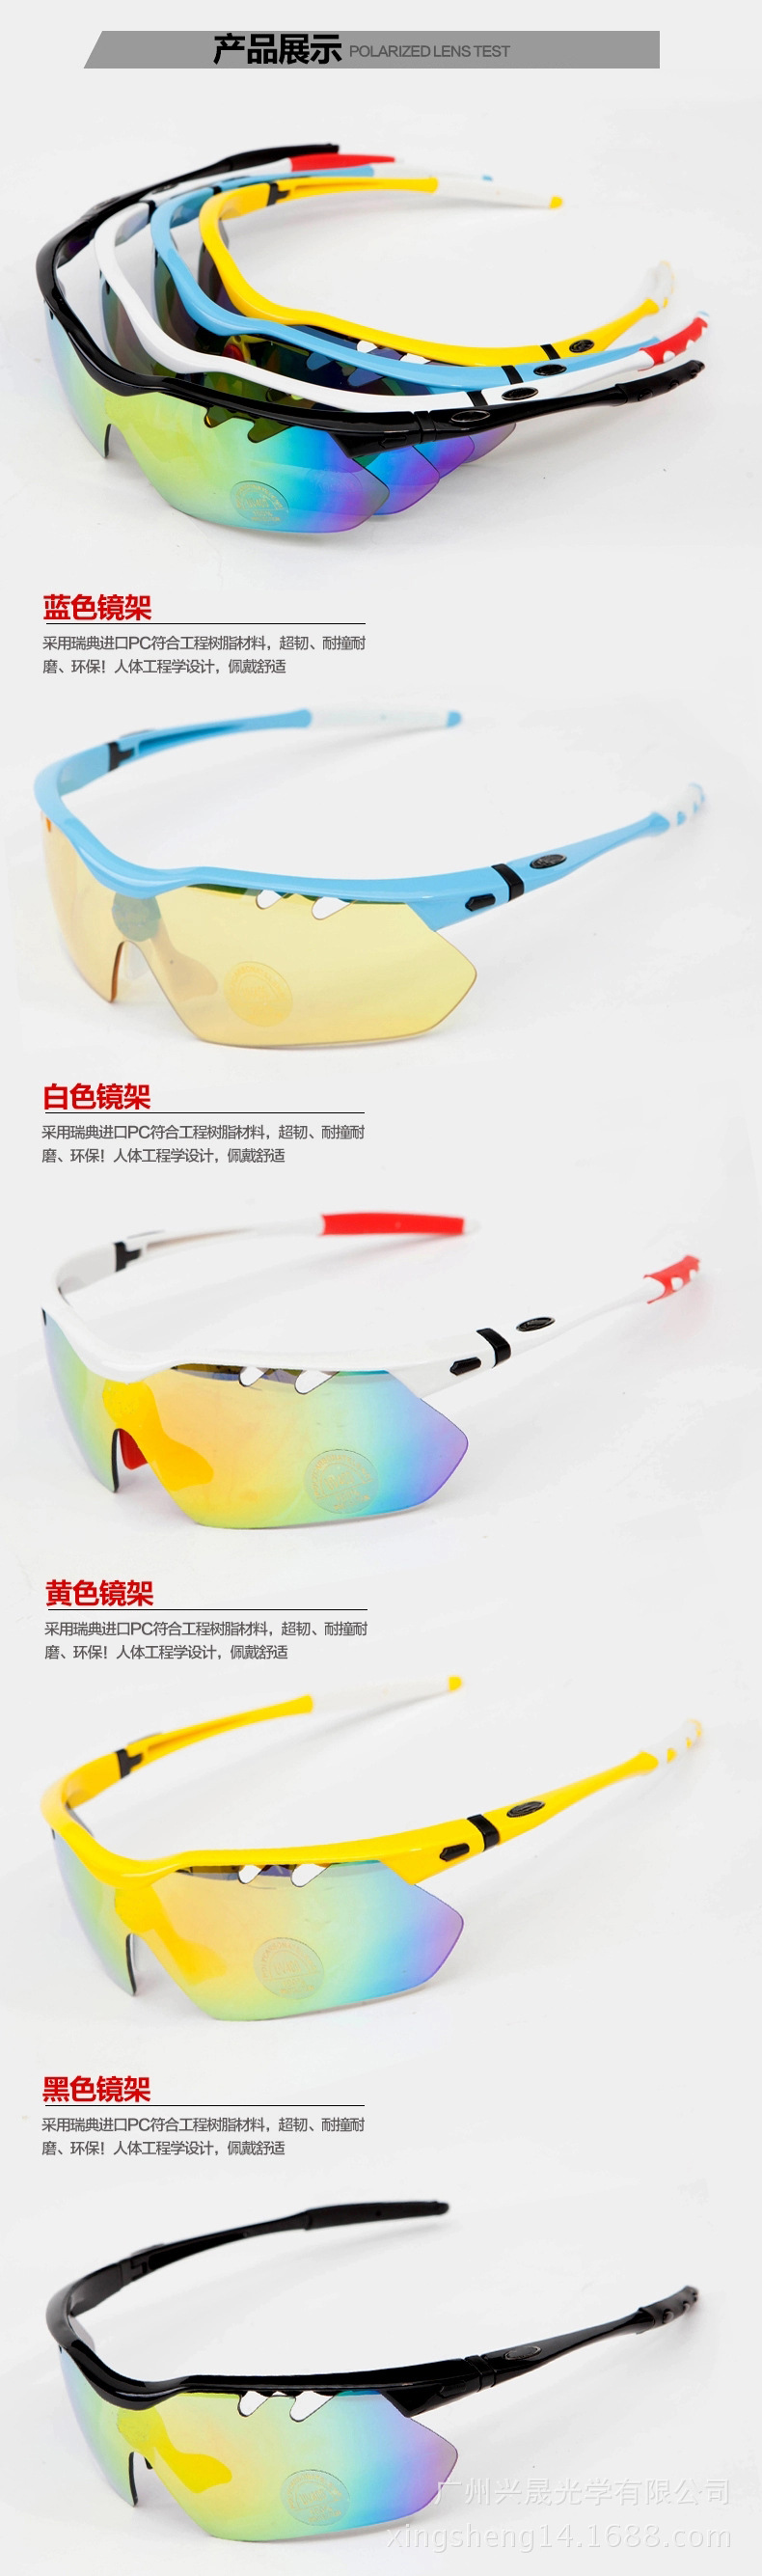 工厂直供 升级版0091骑行镜 高清近视运动太阳风镜 户外偏光眼镜示例图6